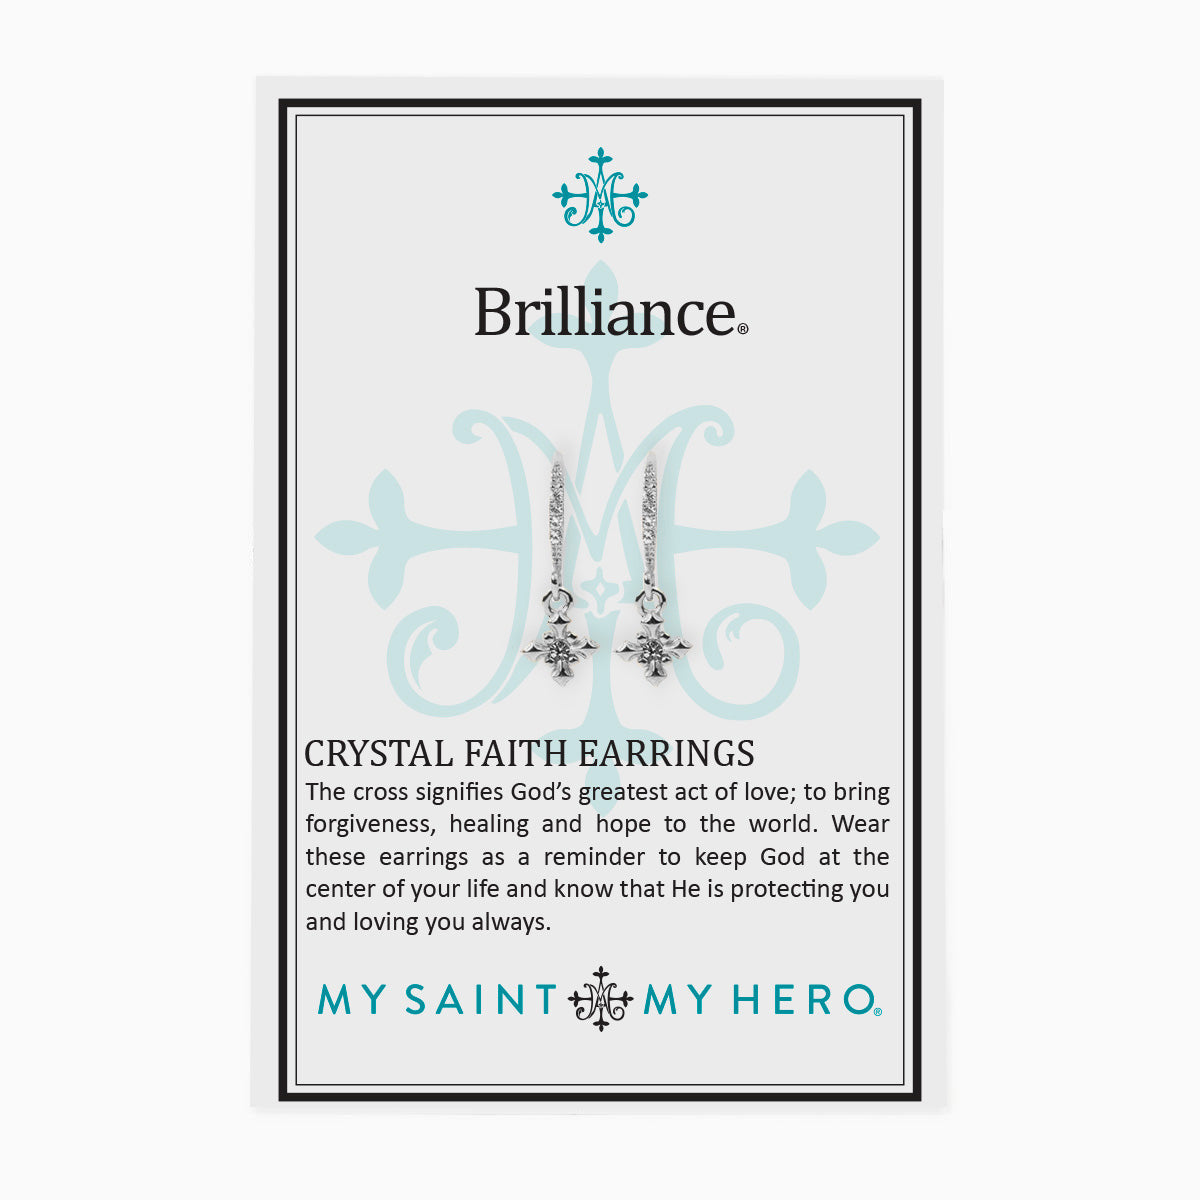 Brilliance Crystal Faith Earrings